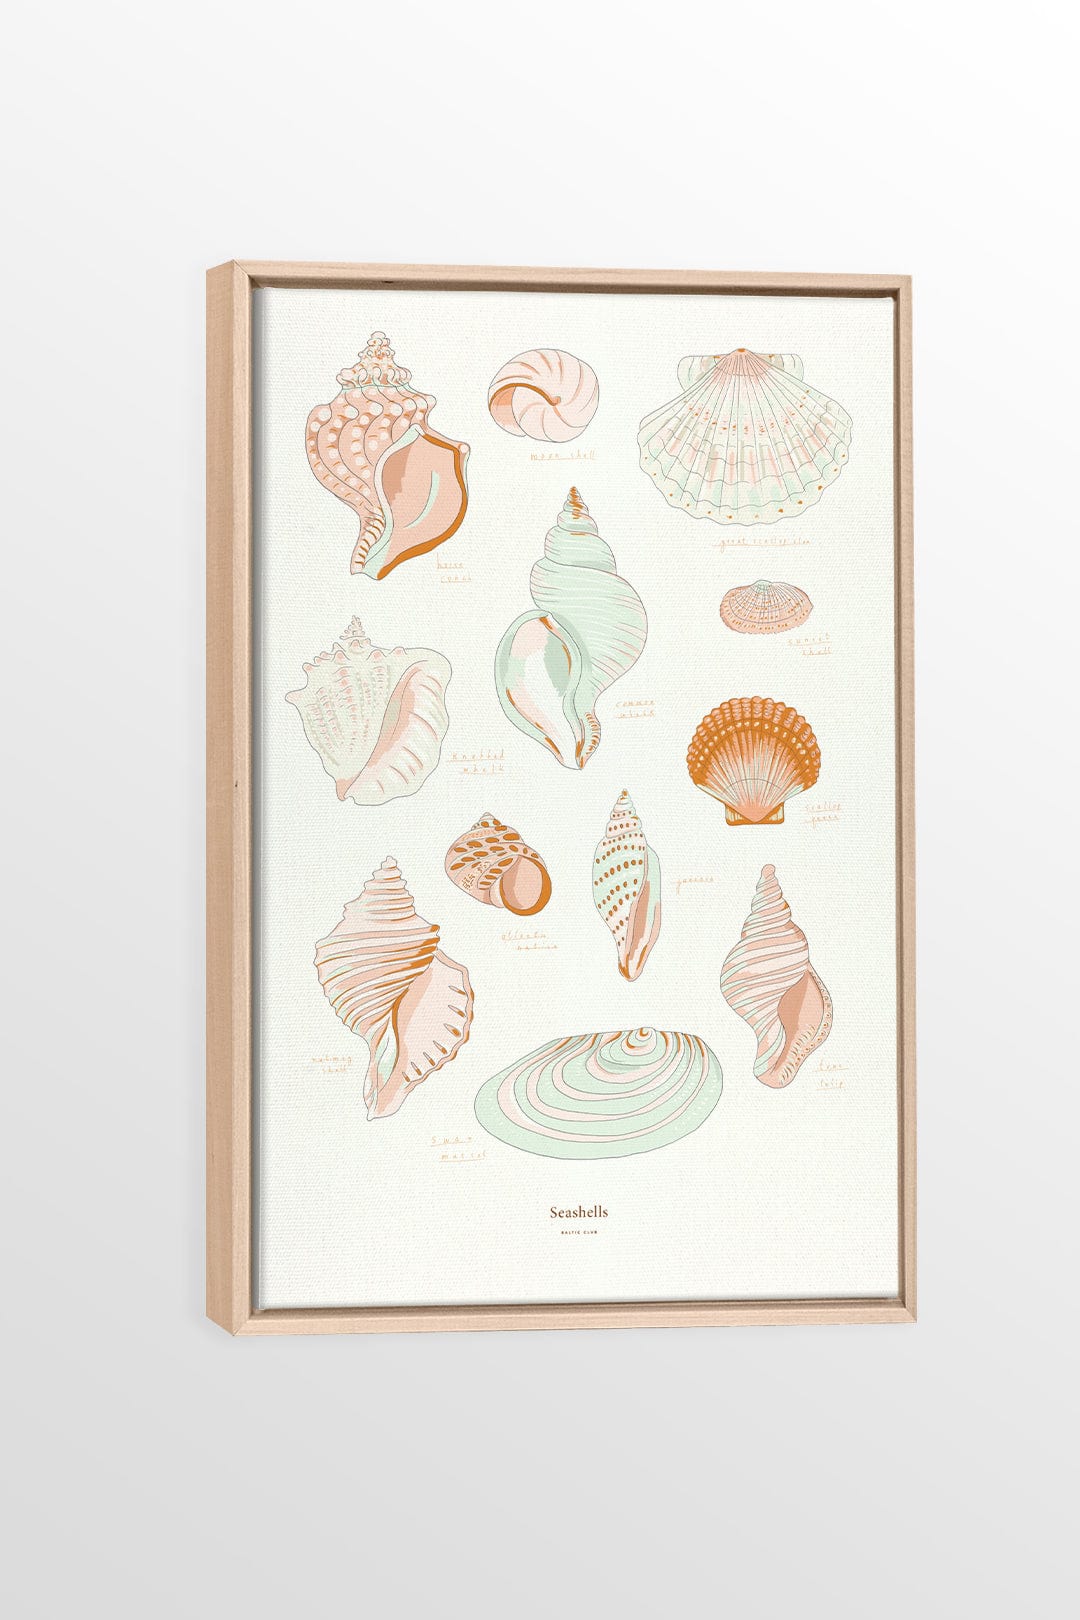 Seashells - Printed illustration on canvas